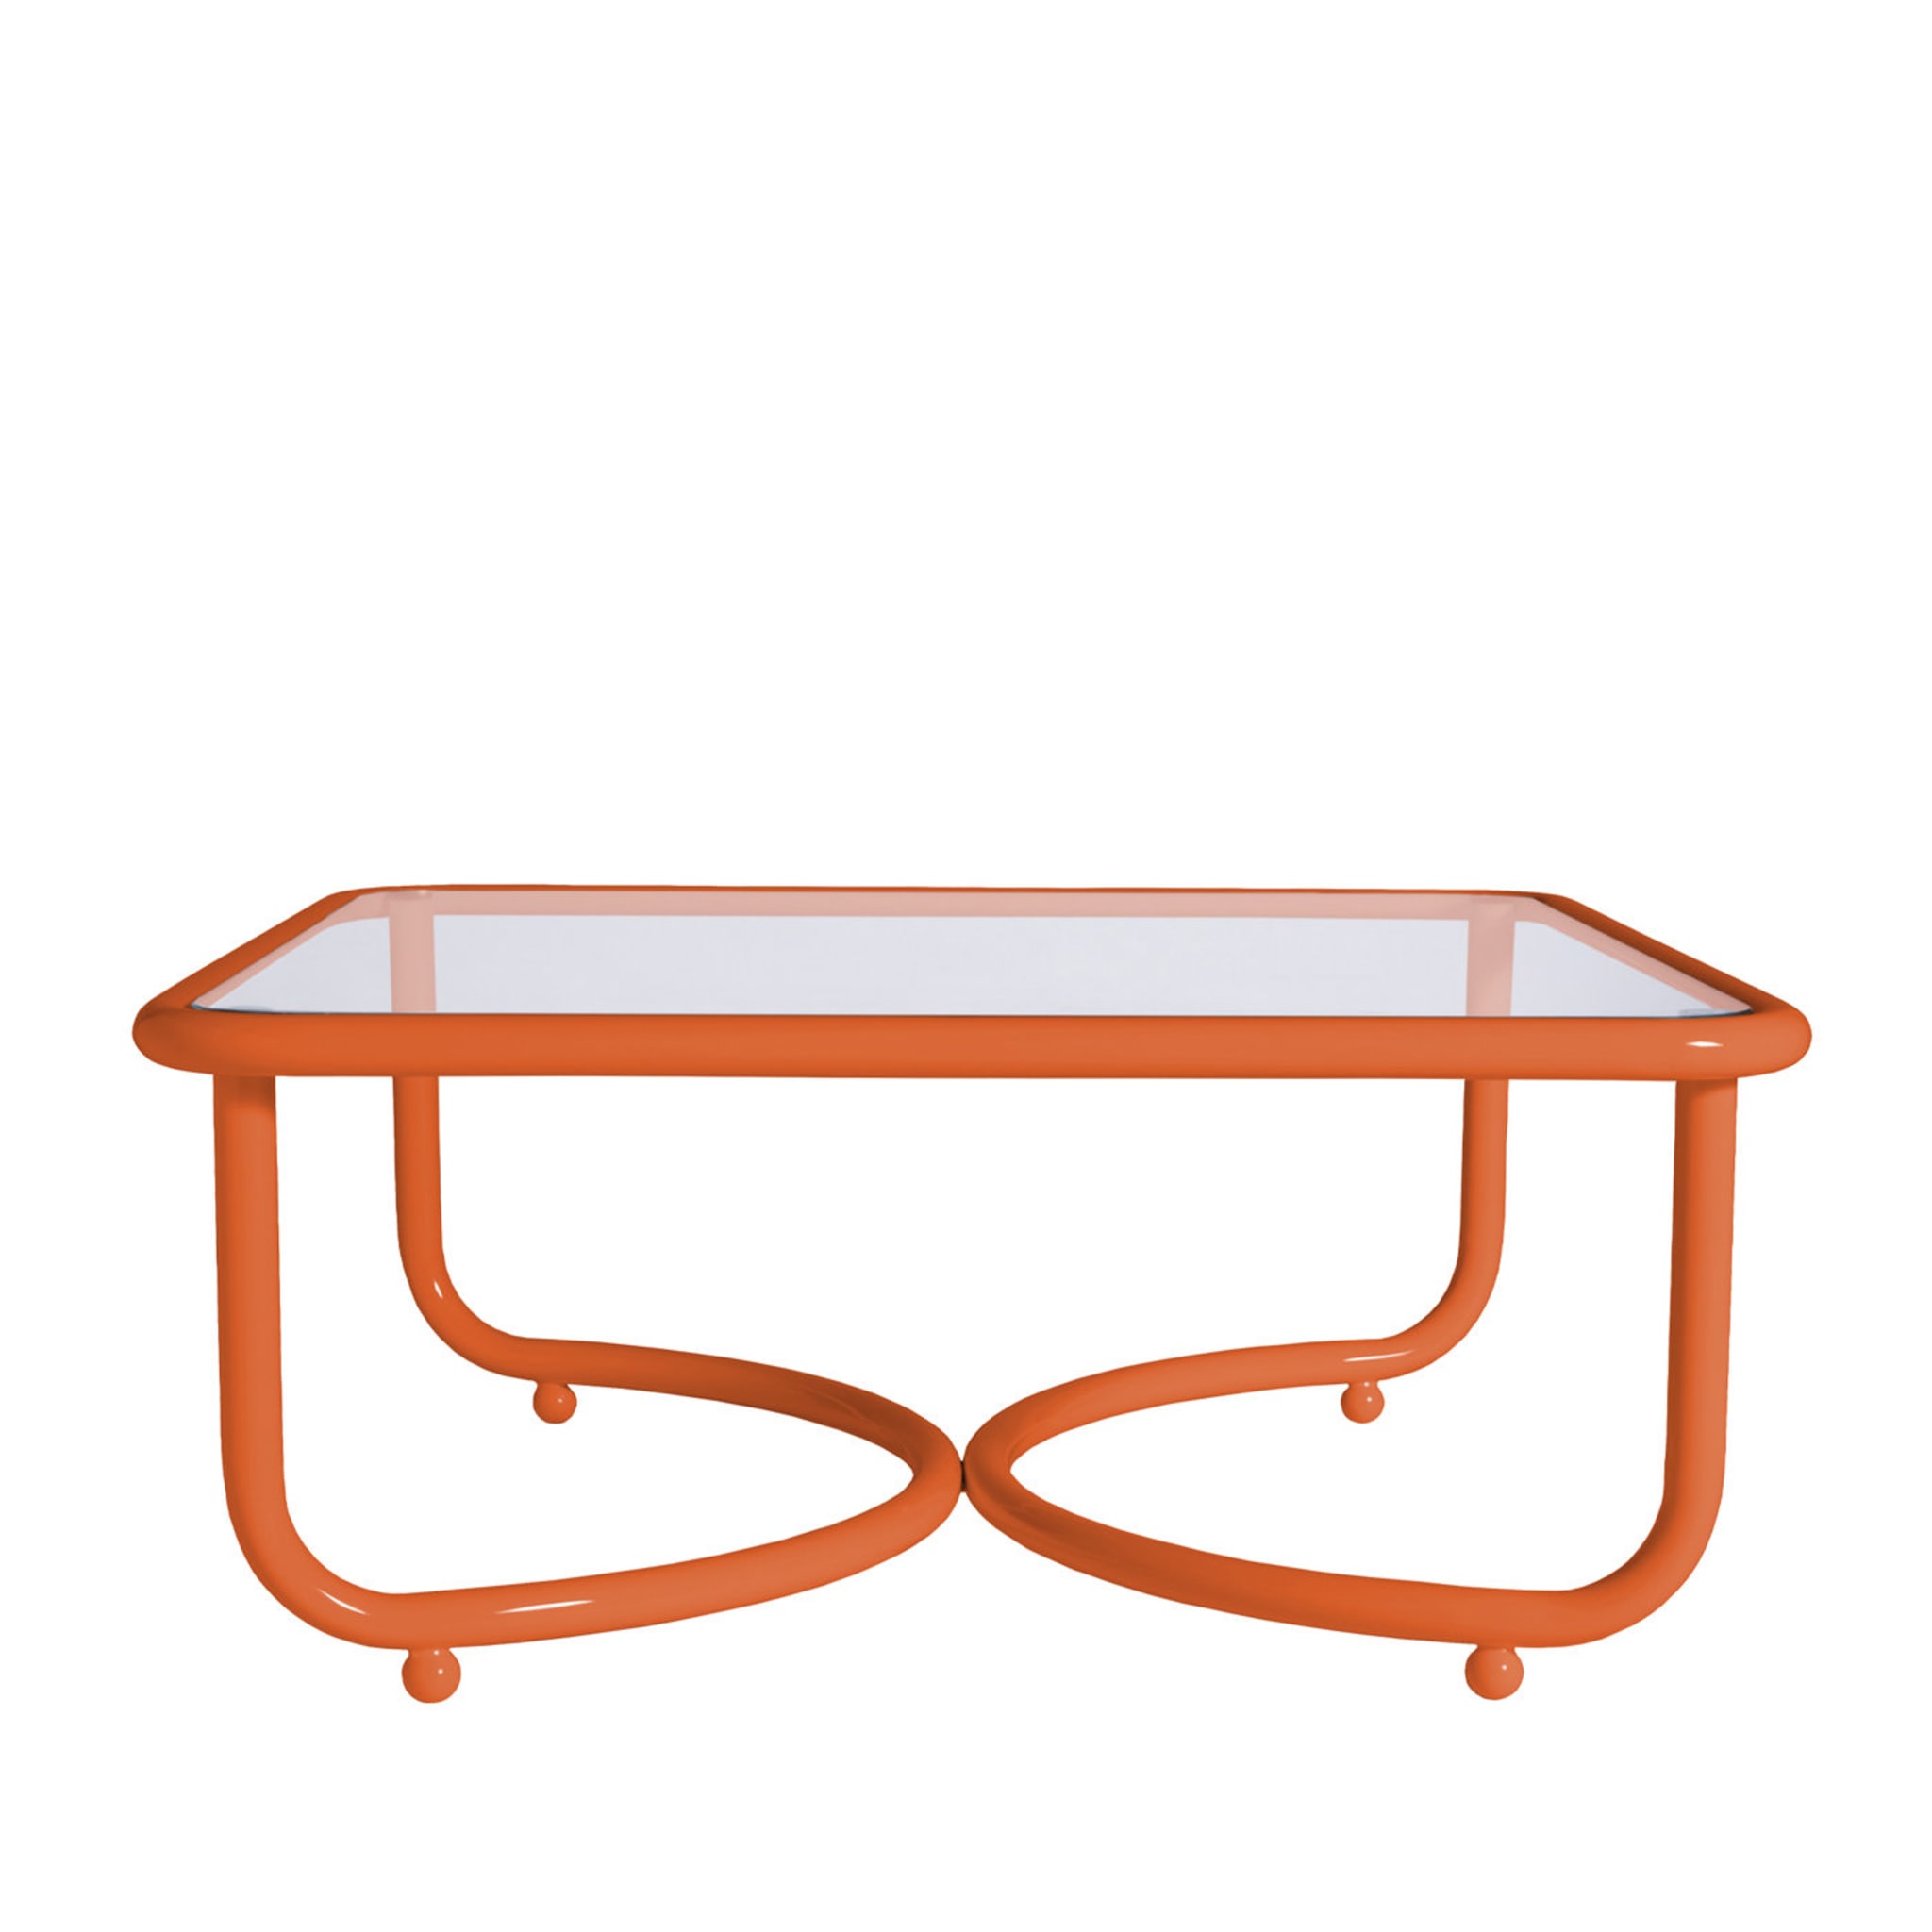 Locus Solus Orange Low Table by Gae Aulenti - Main view